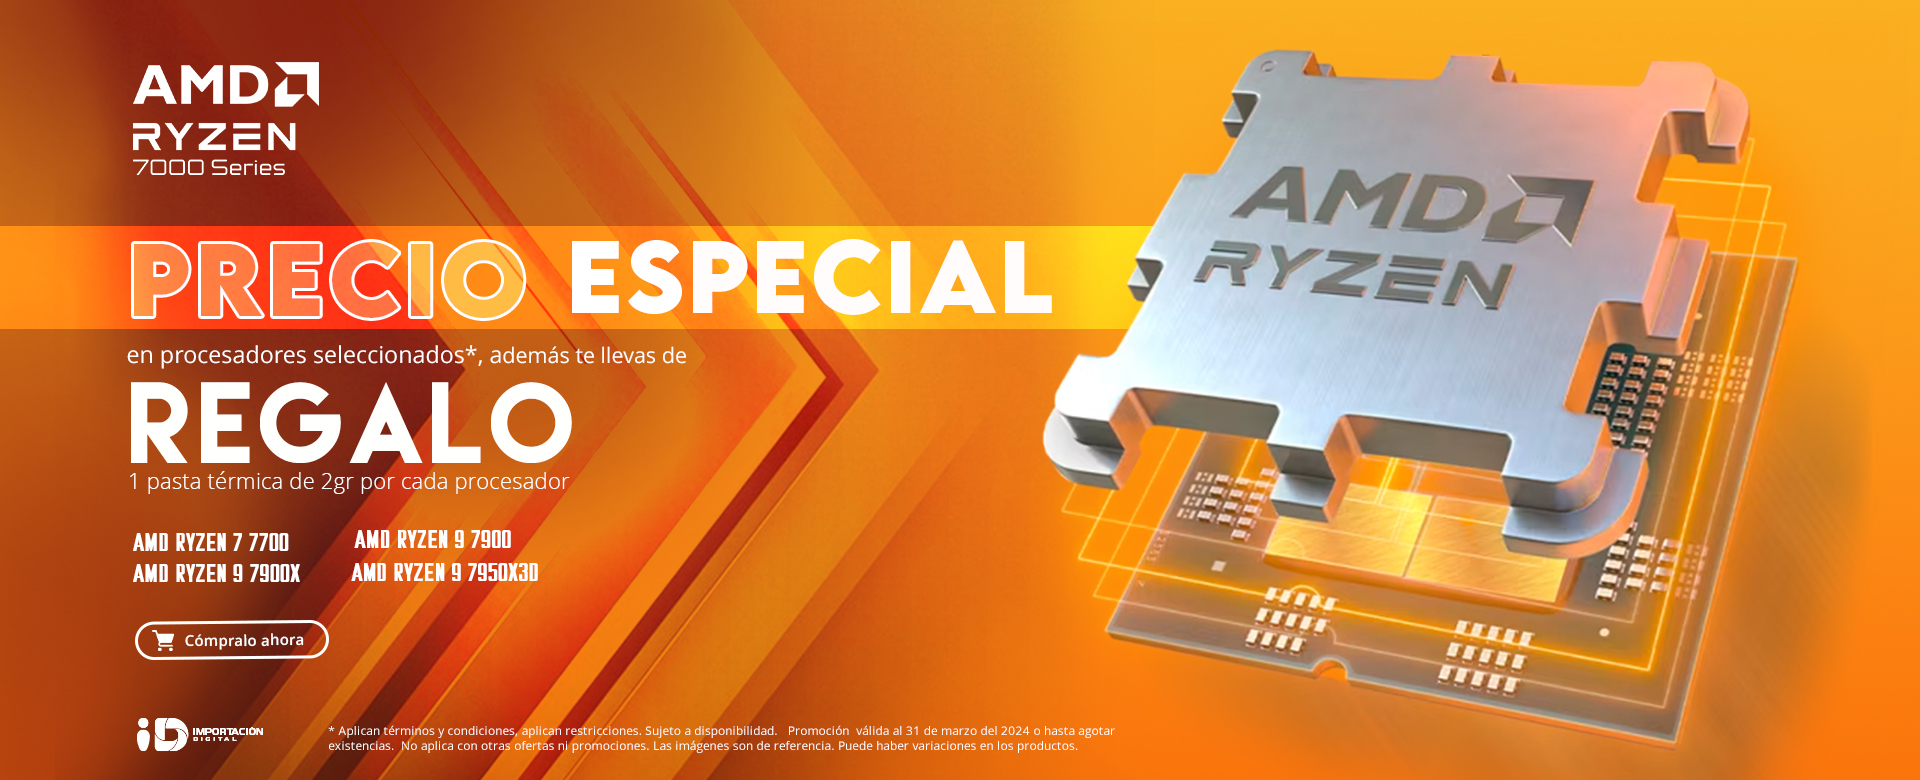 AMD precio especial mas regalo